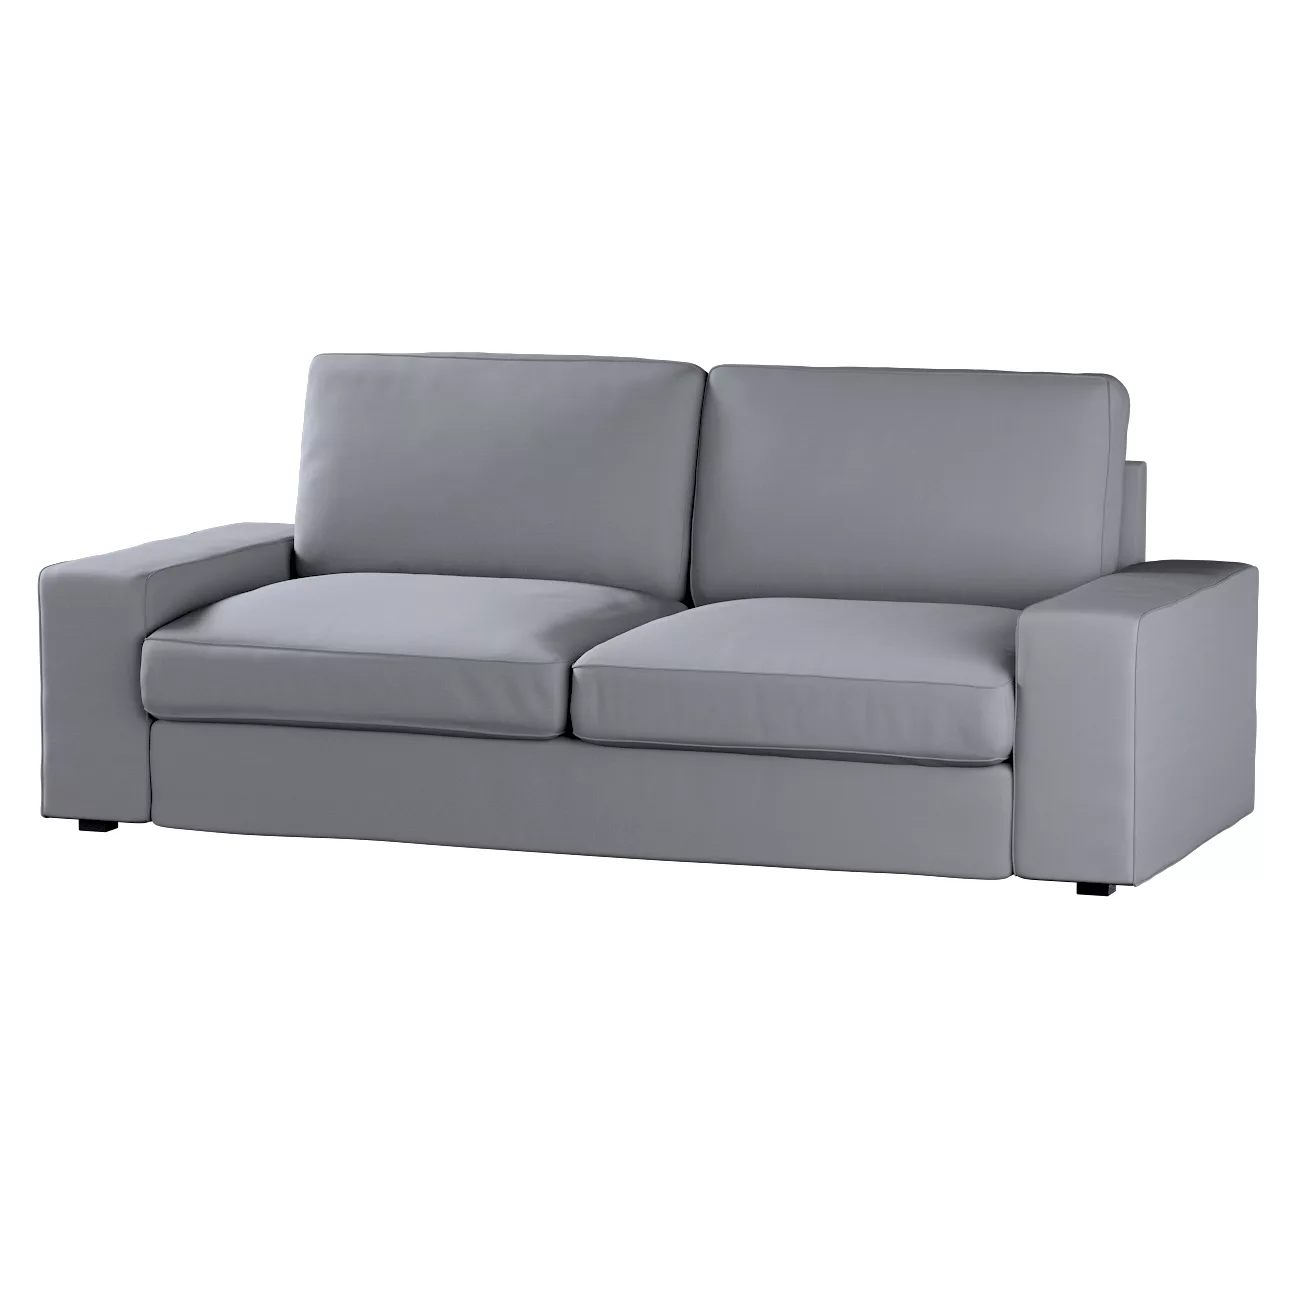 Bezug für Kivik 3-Sitzer Sofa, grau, Bezug für Sofa Kivik 3-Sitzer, Cotton günstig online kaufen